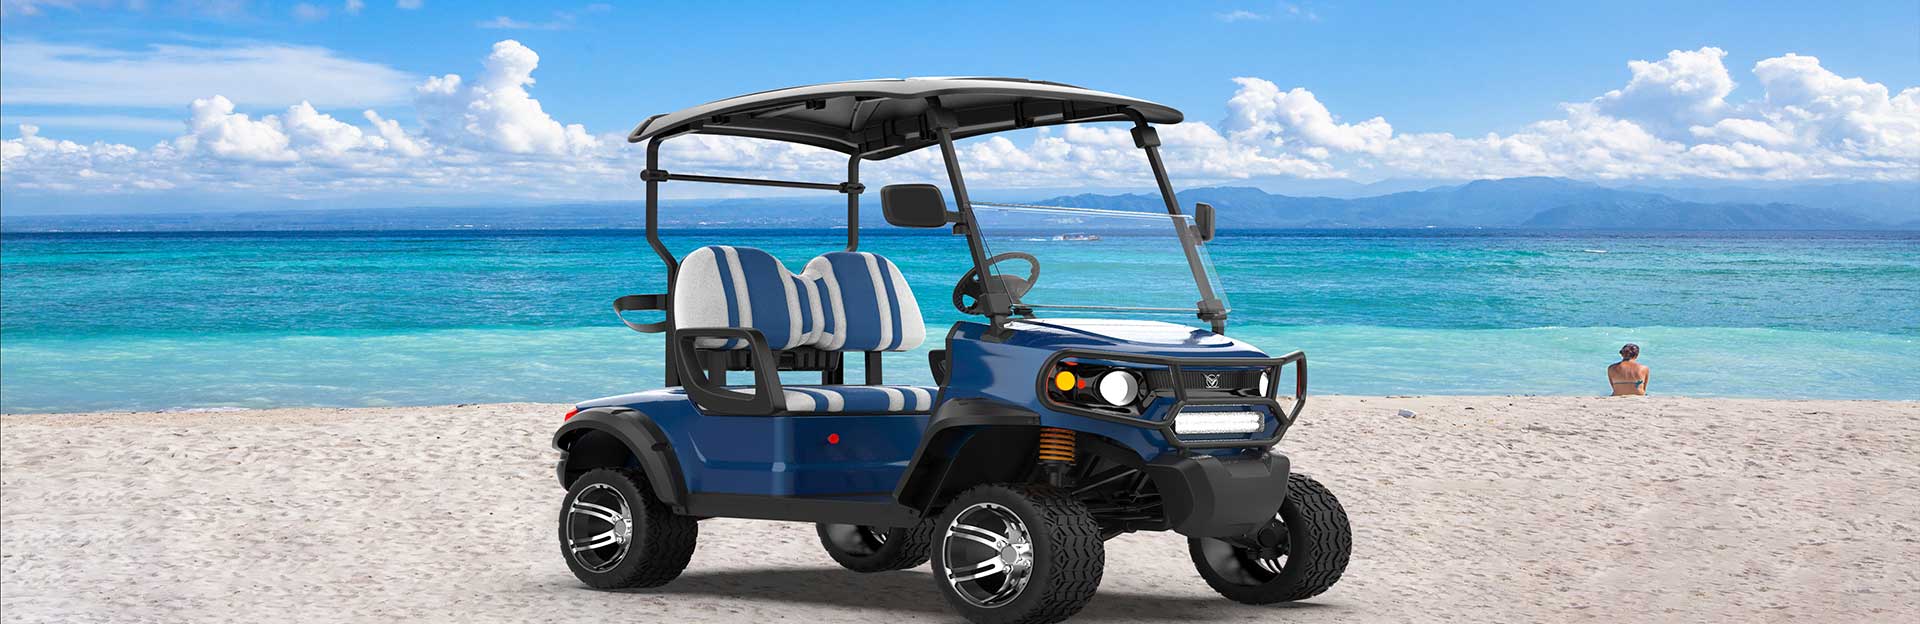 Personalizza il carrello da Golf elettrico dei tuoi sogni